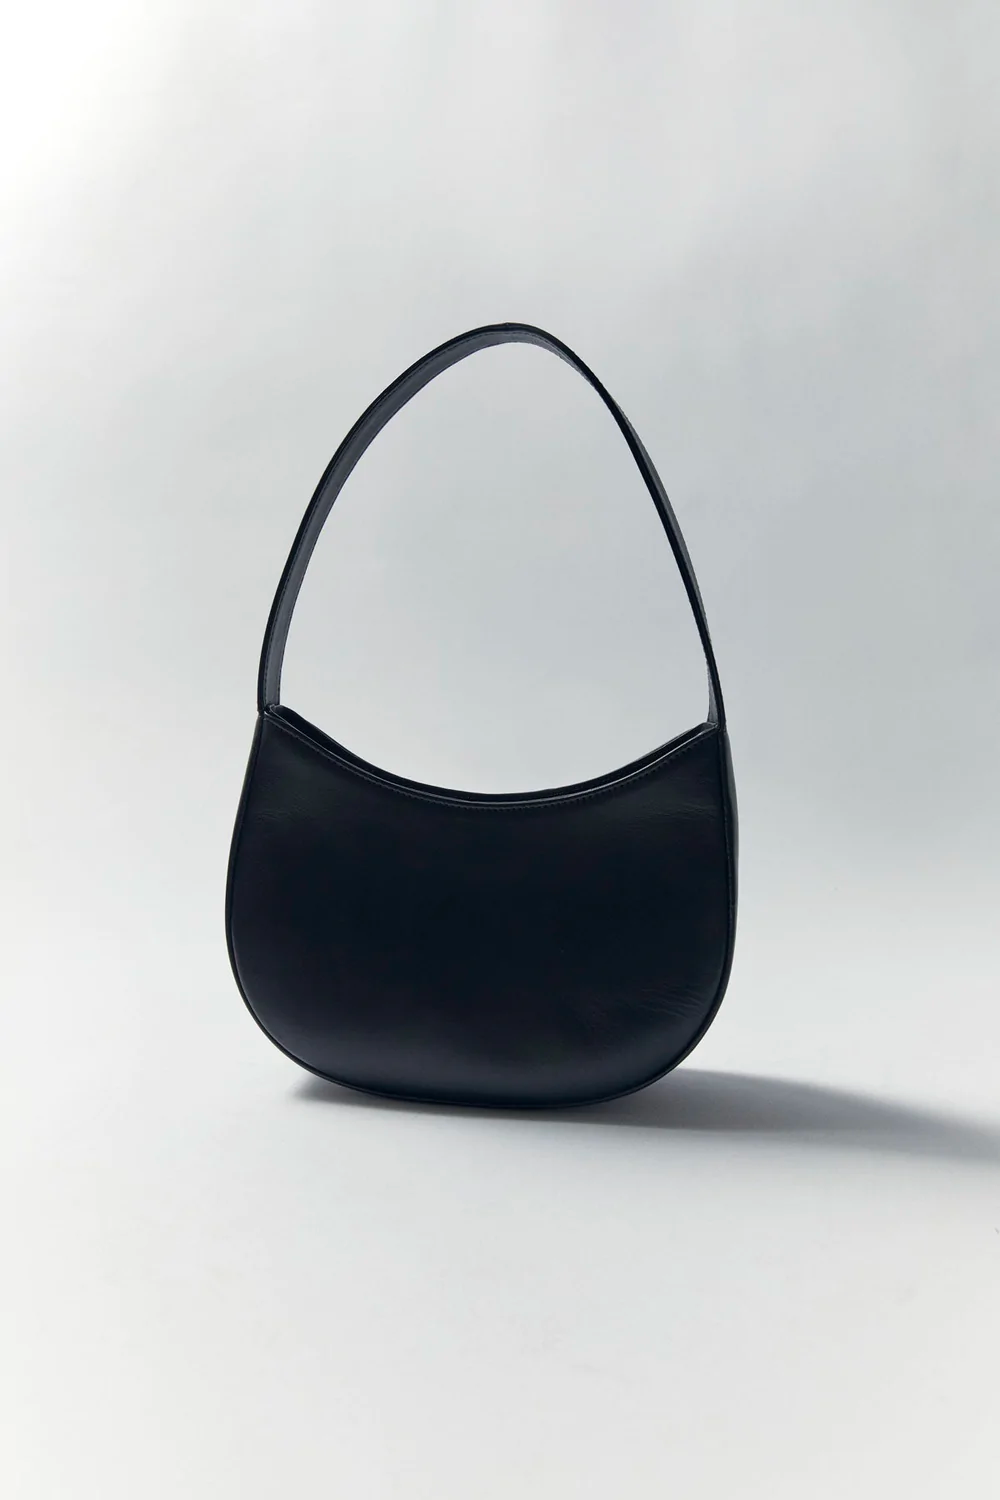 Product Image for 90s Shoulder Bag, Black